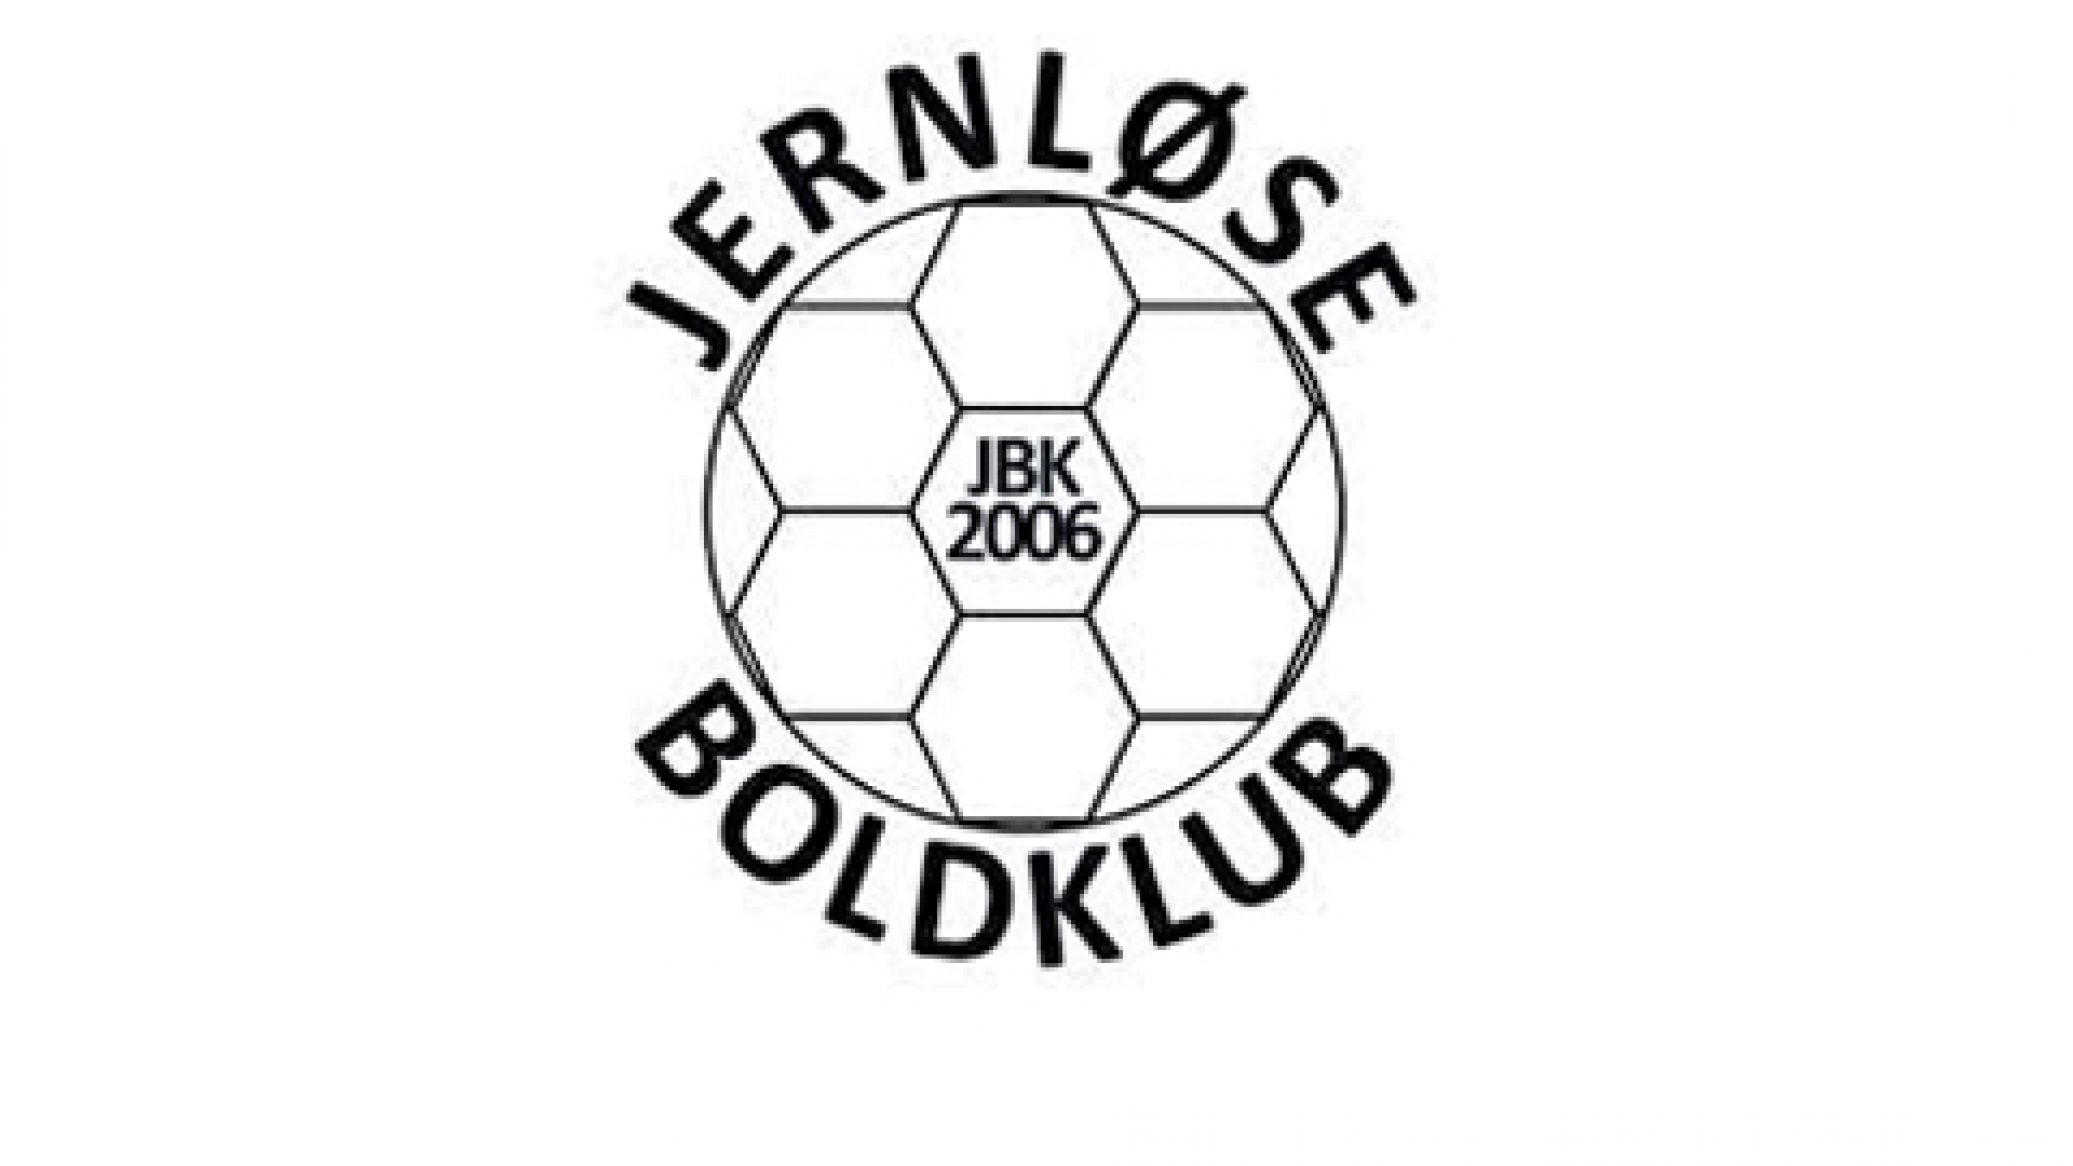 Jernløse Boldklub